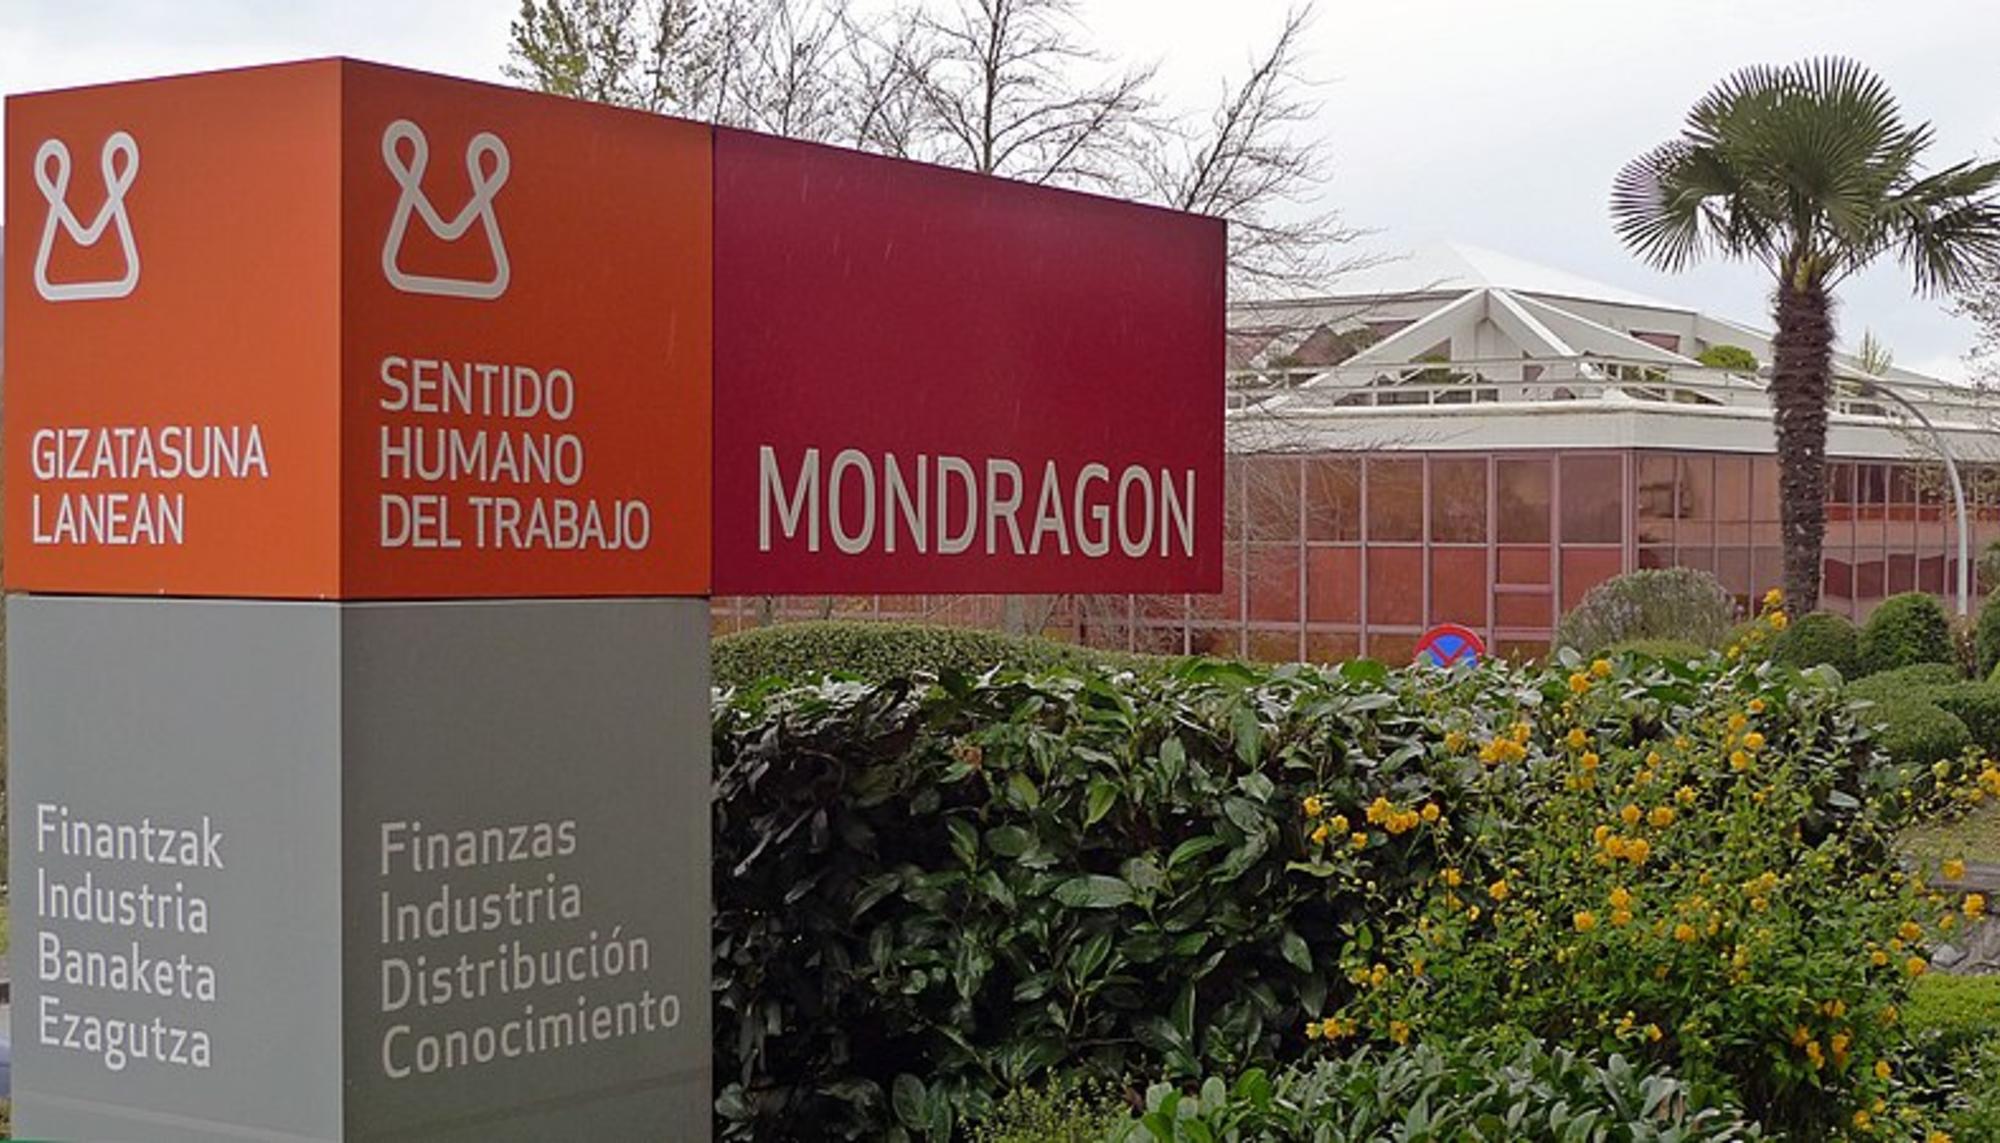 Corporacion Mondragon